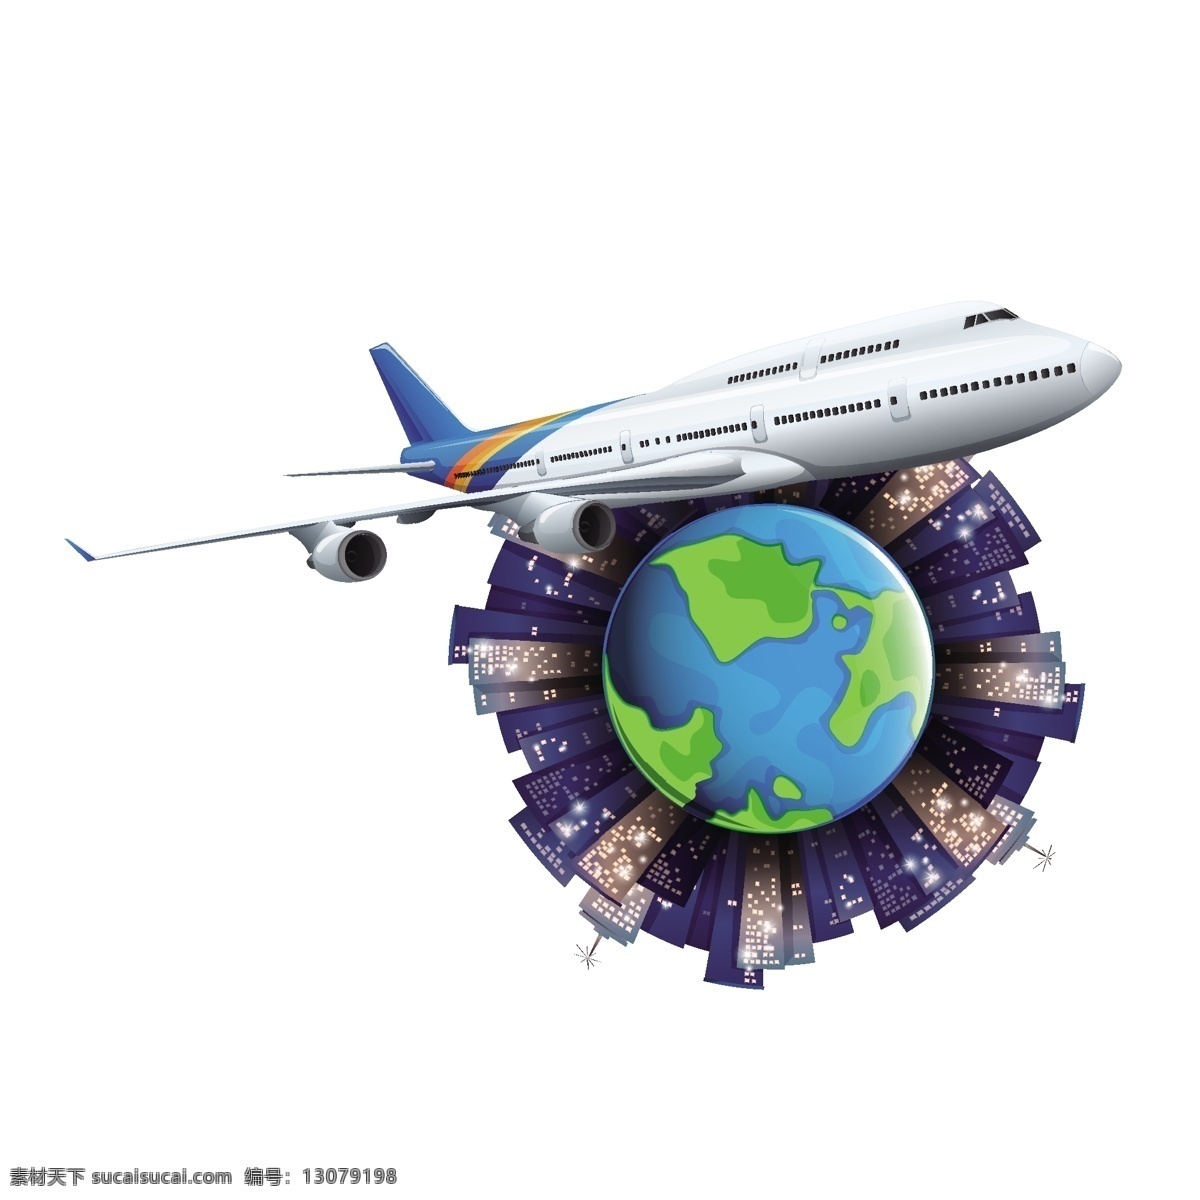 环游 世界 飞机 矢量 卡通 卡通飞机 飞机环游 环游世界 世界旅行 蓝色 蓝色地球 建筑物